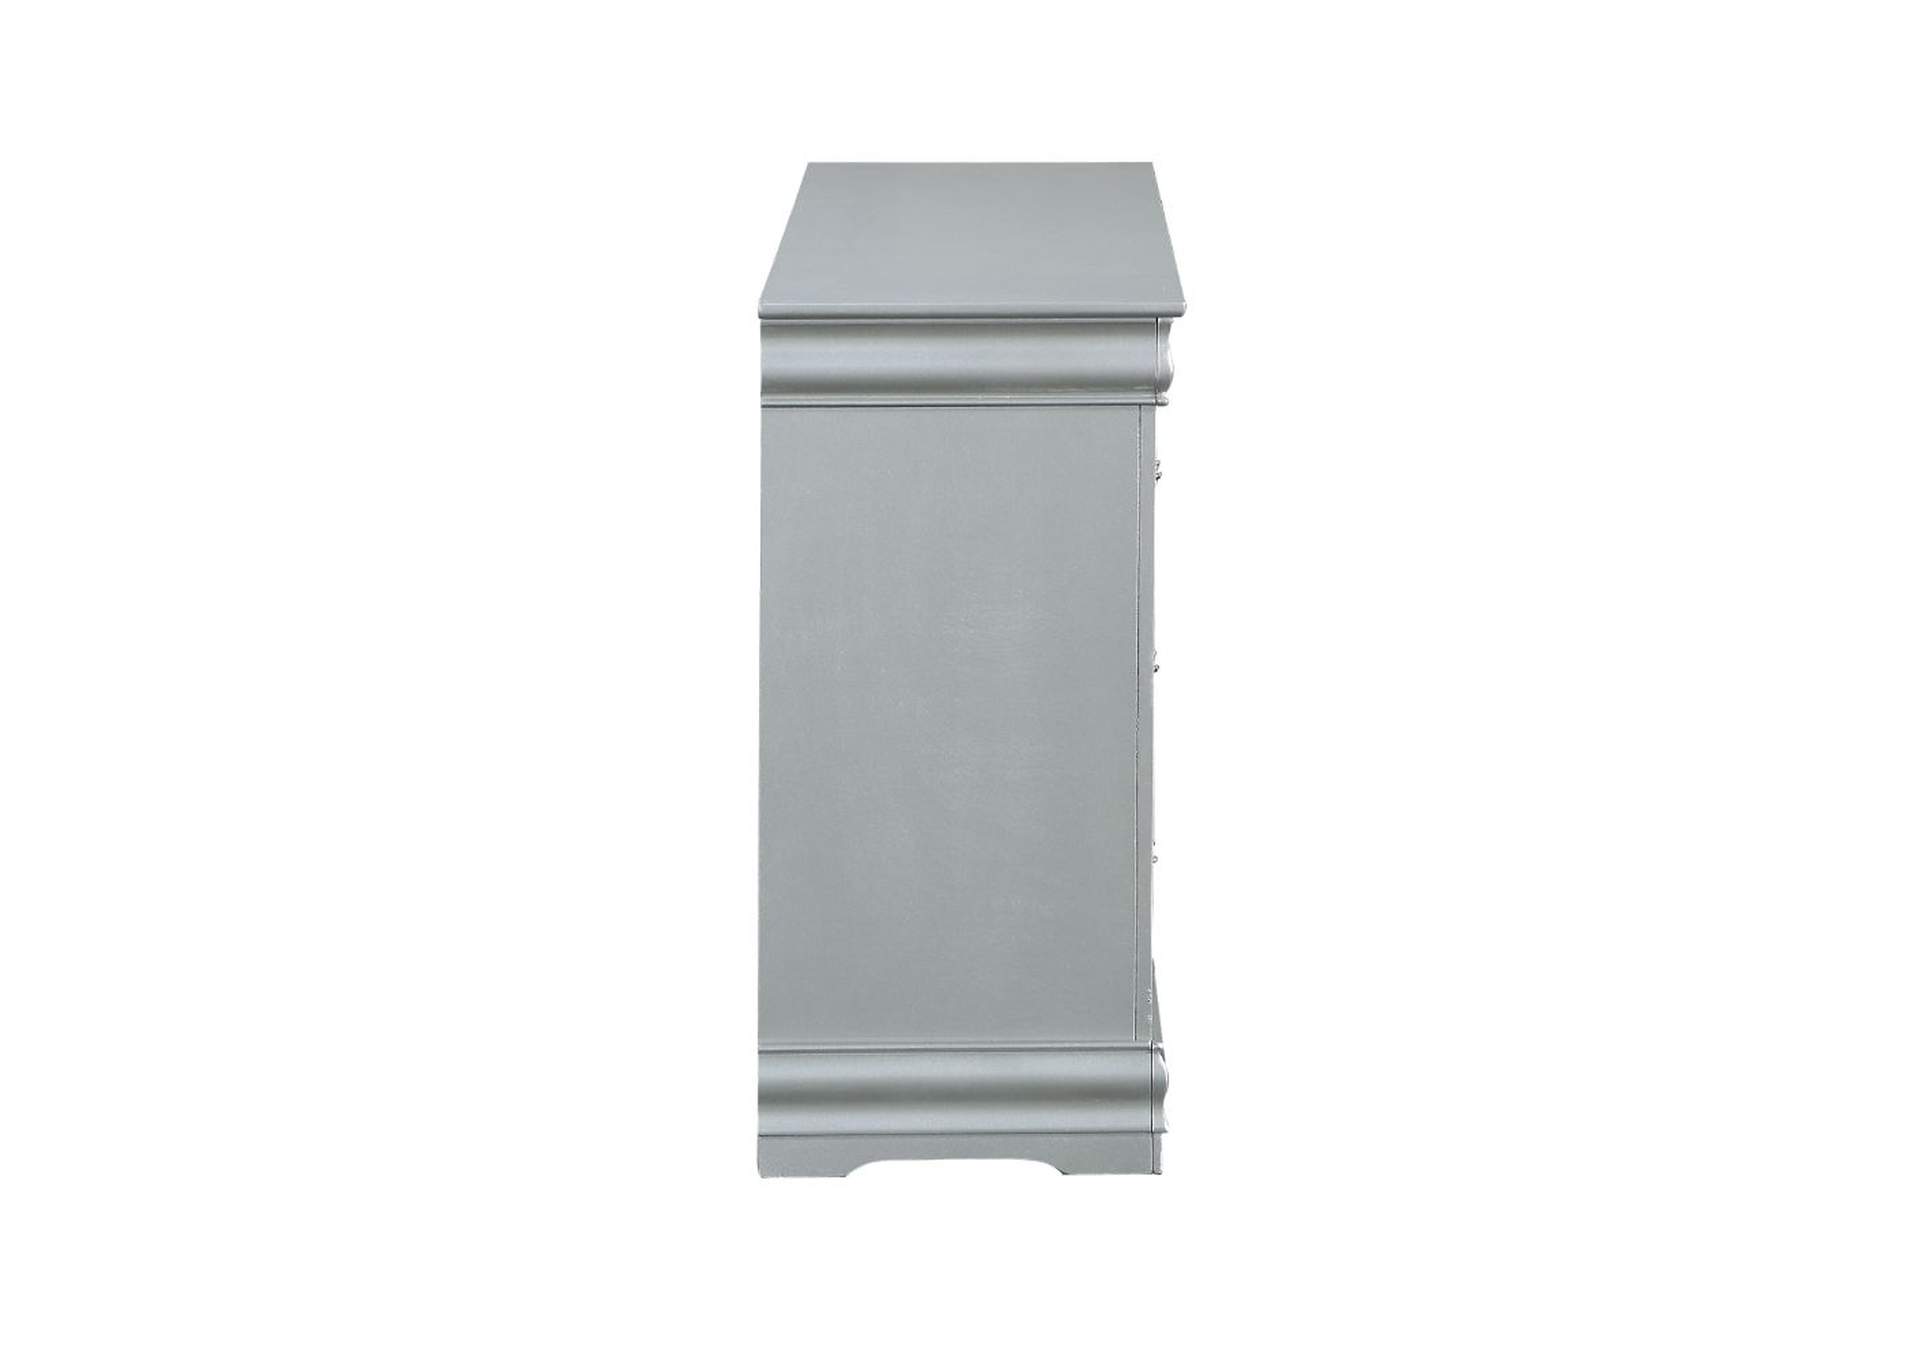 Louis Philippe III Platinum Dresser,Acme